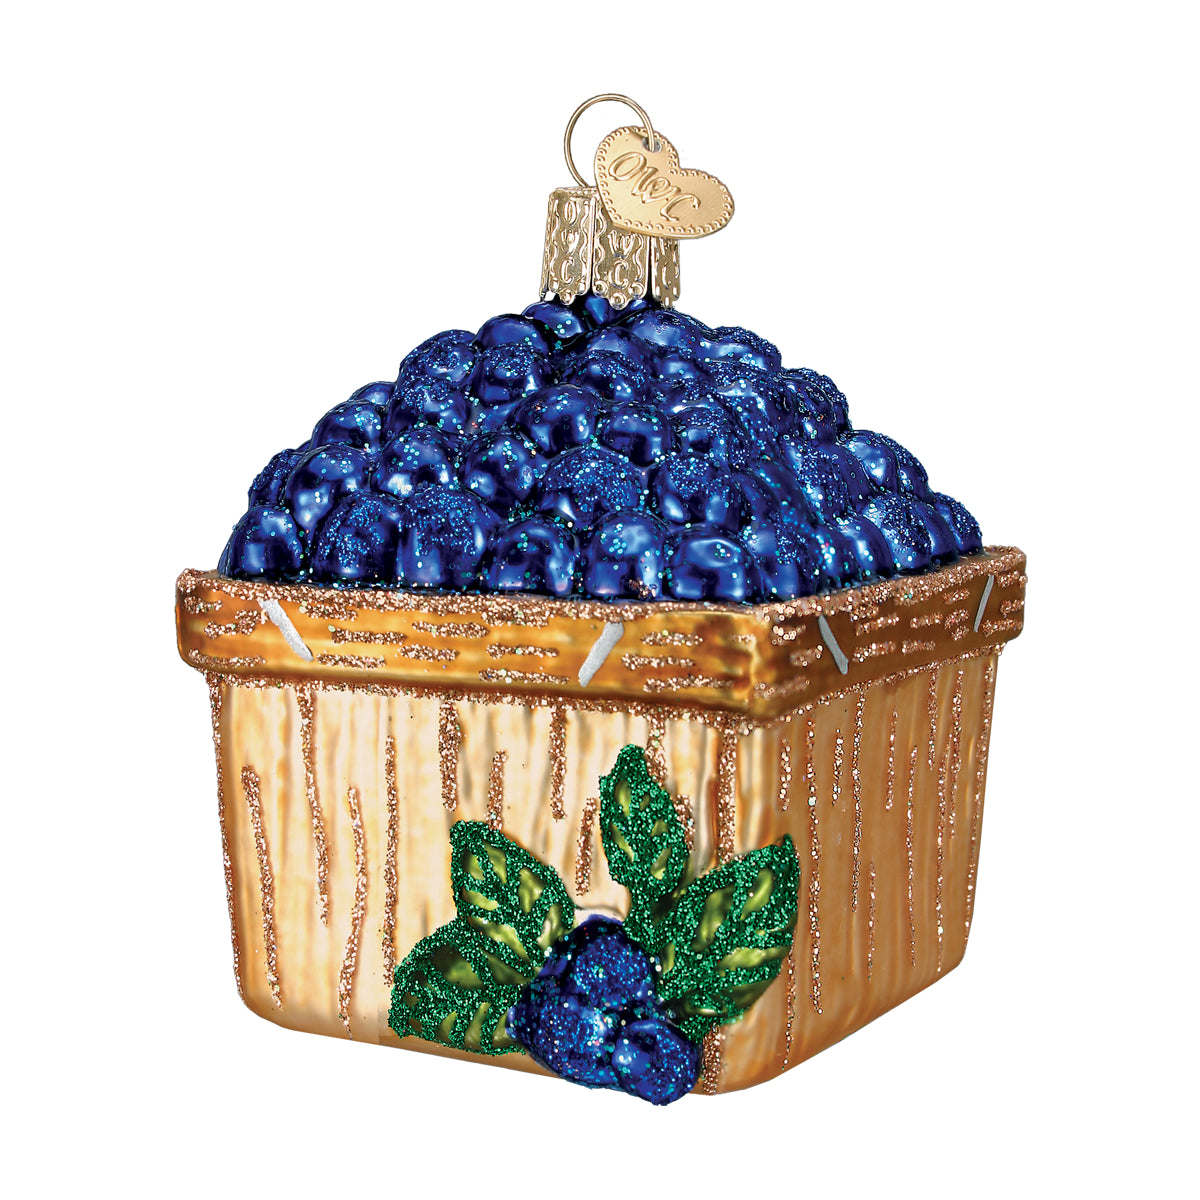 Basket Of Blueberries